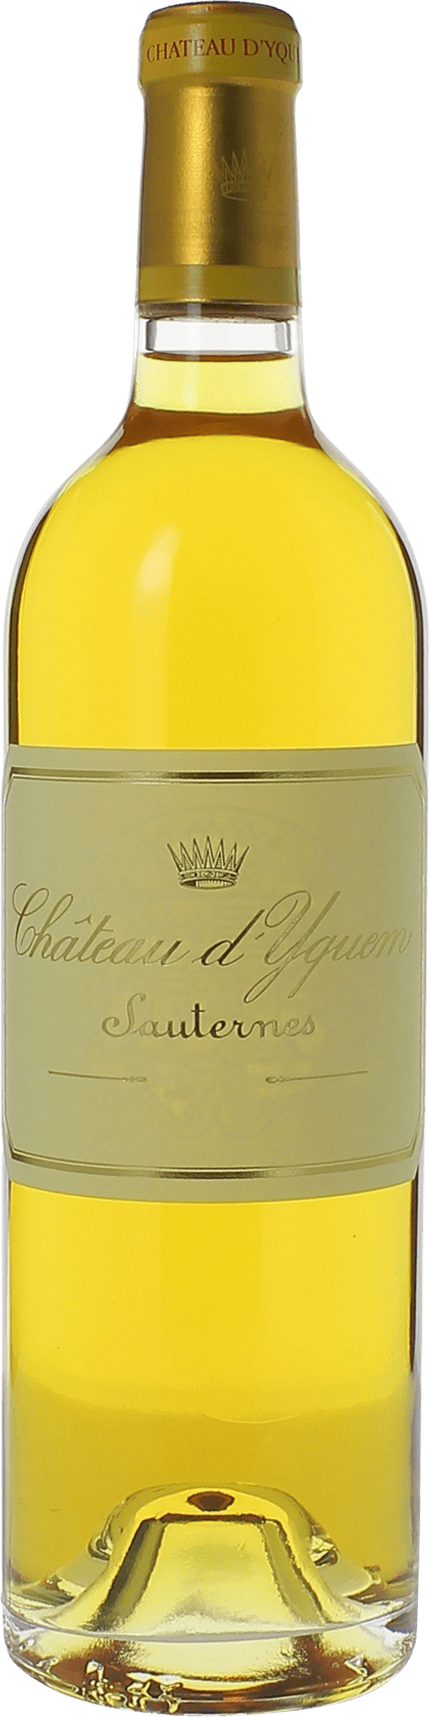 Yquem 1982 1er Grand cru class Sauternes, Bordeaux blanc